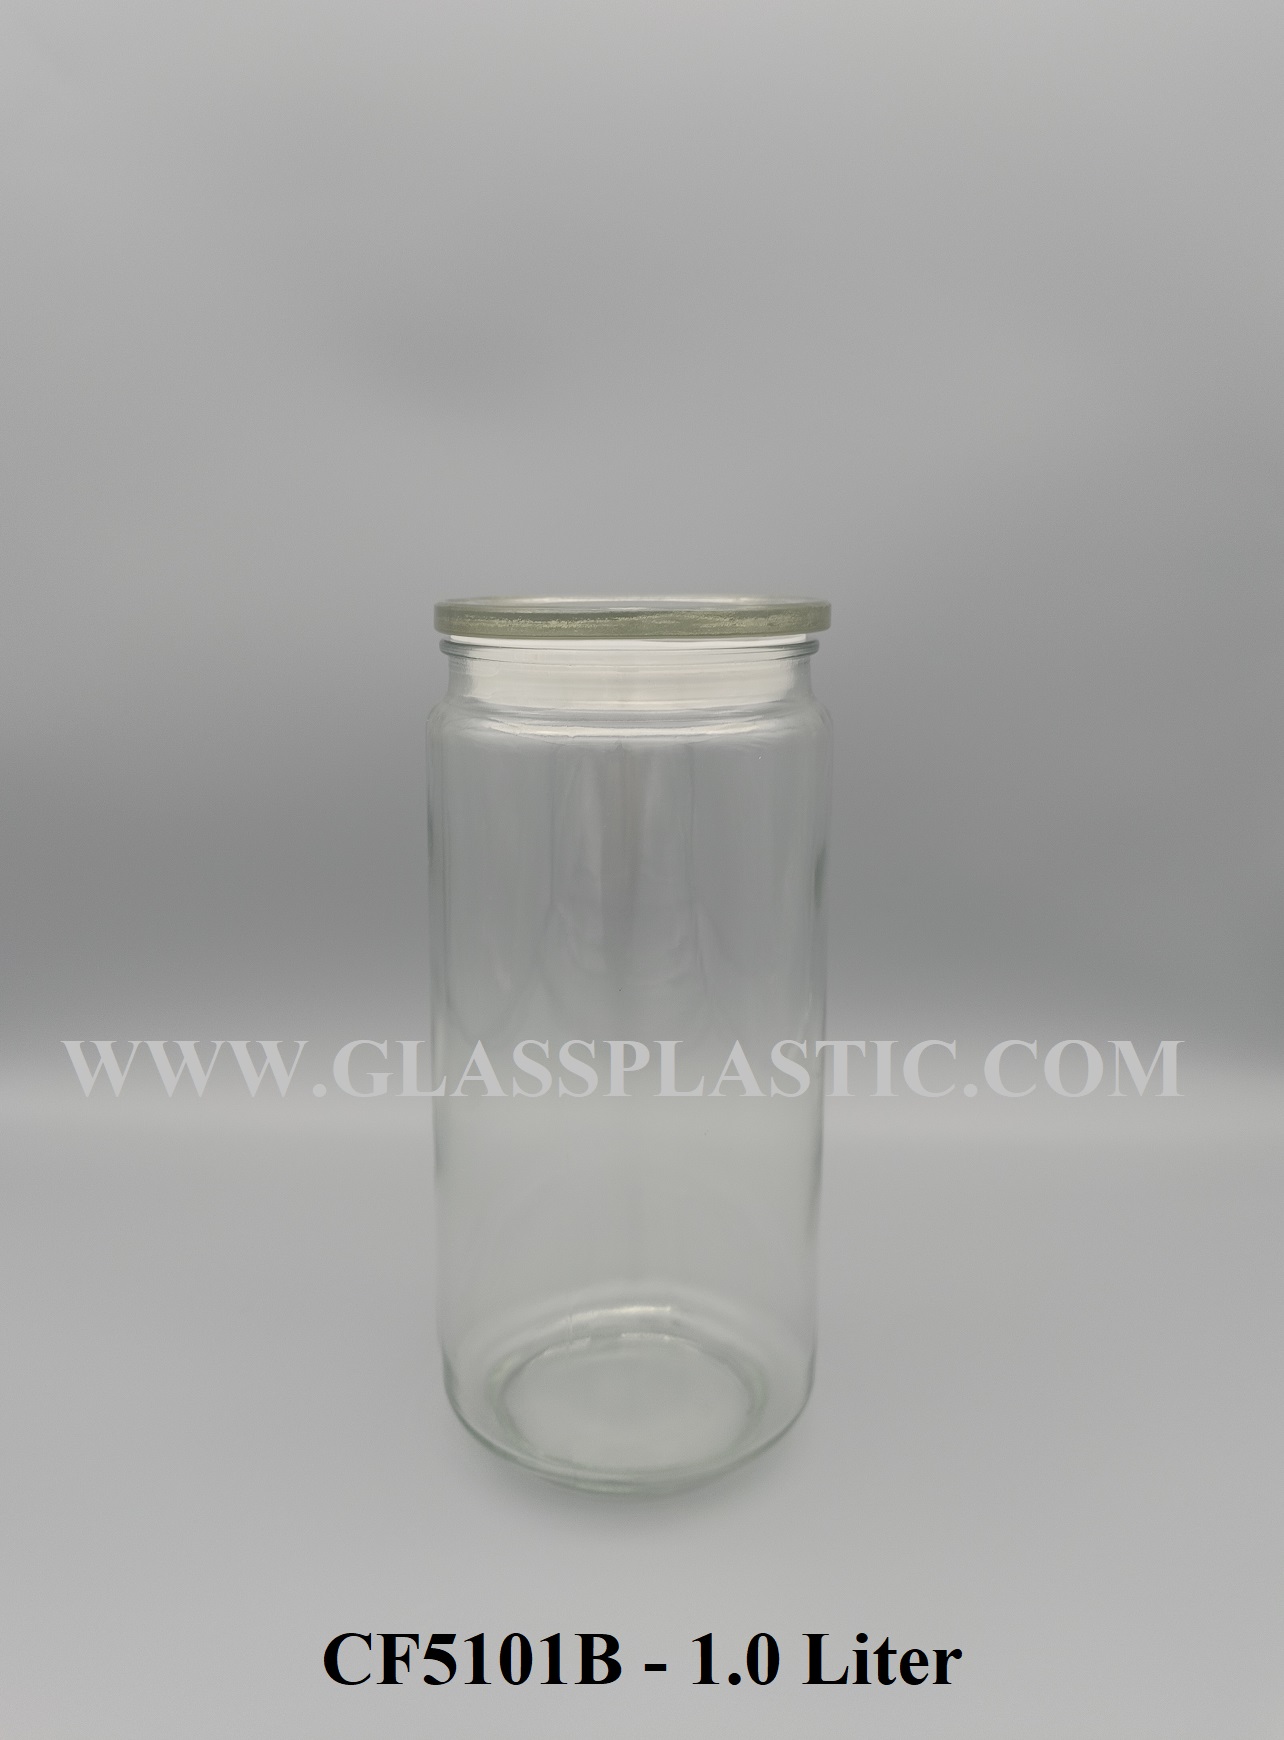 Air-Tight Glass Jar – 1.0 Liter